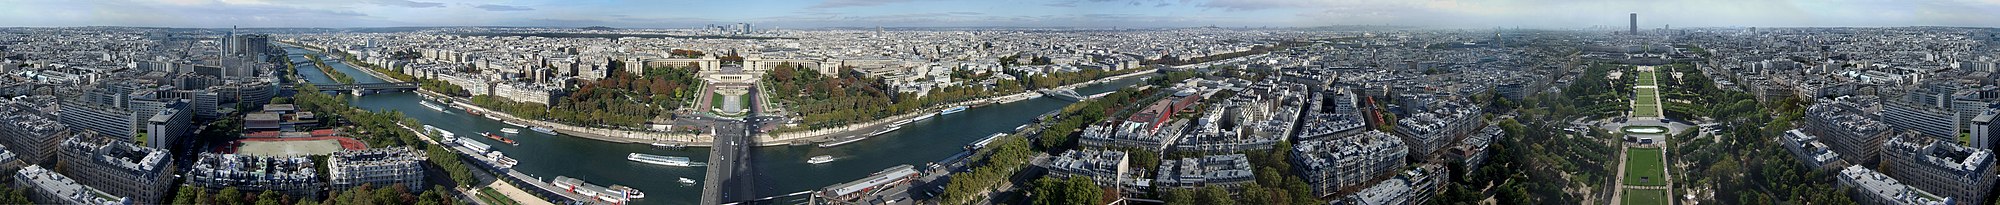 360°-Panorama van Parijs, gefotografeerd vanaf Eiffeltoren. Een gedetailleerde beschrijving van het panorama is hier te vinden.